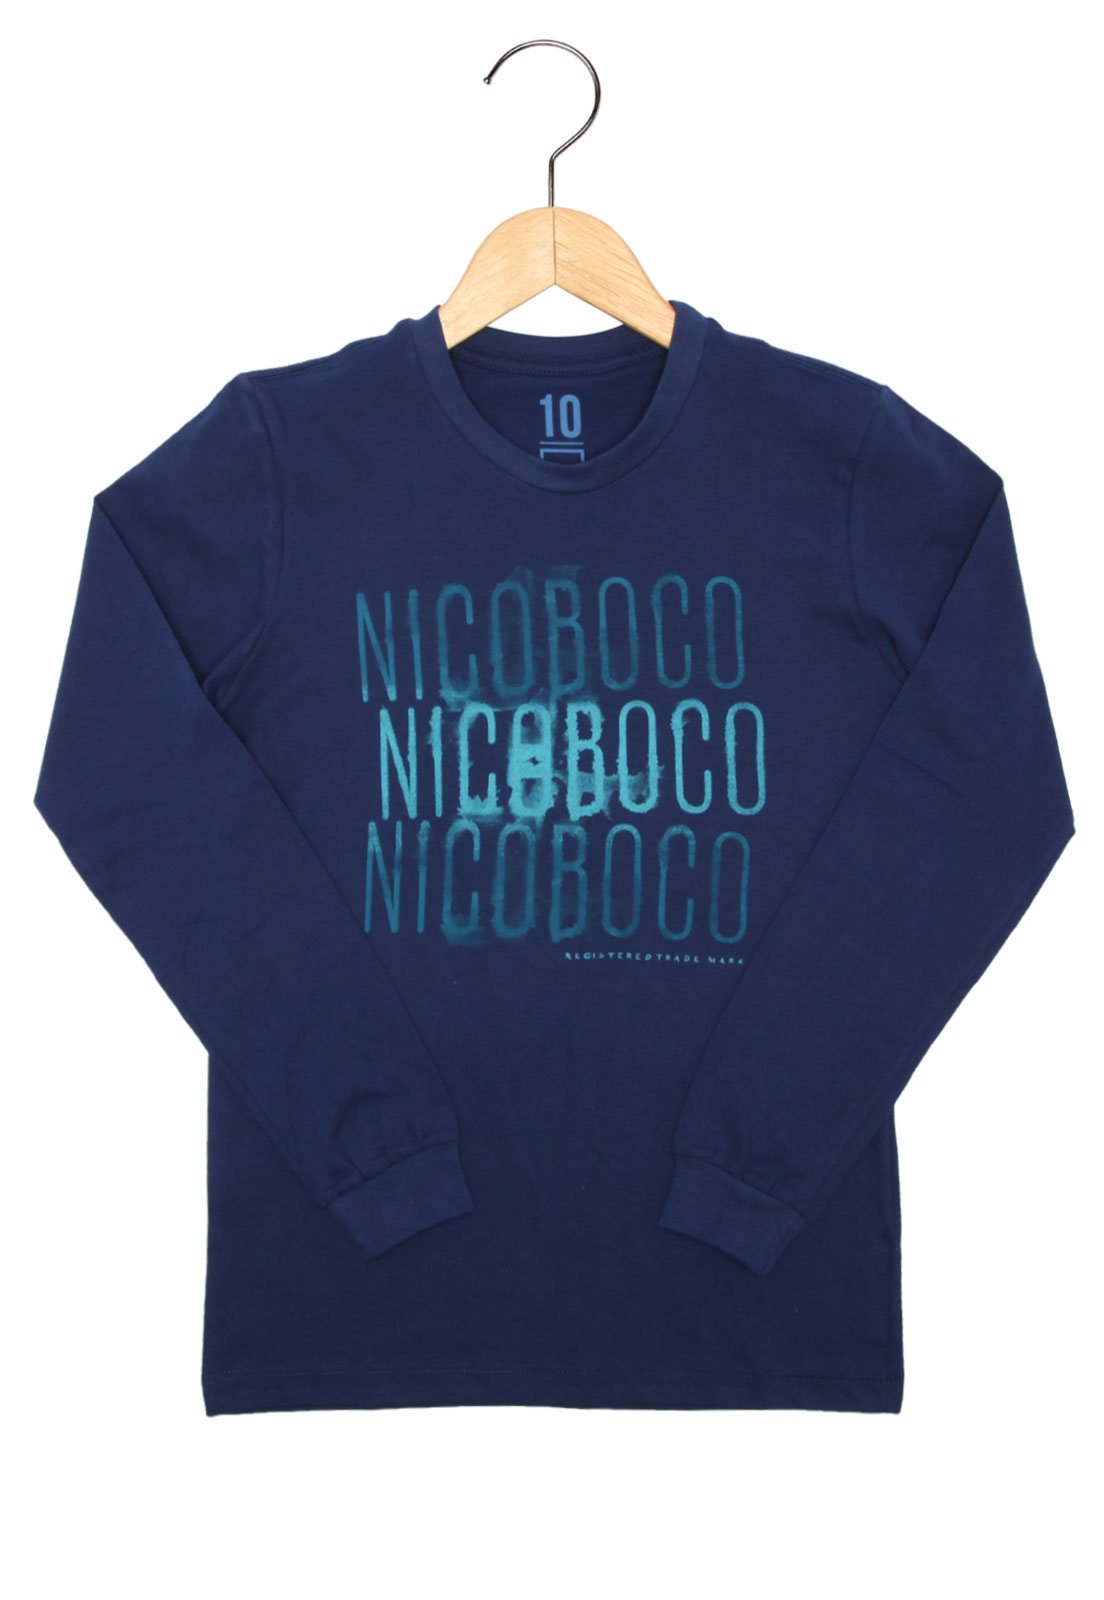 nicoboco blusa de frio